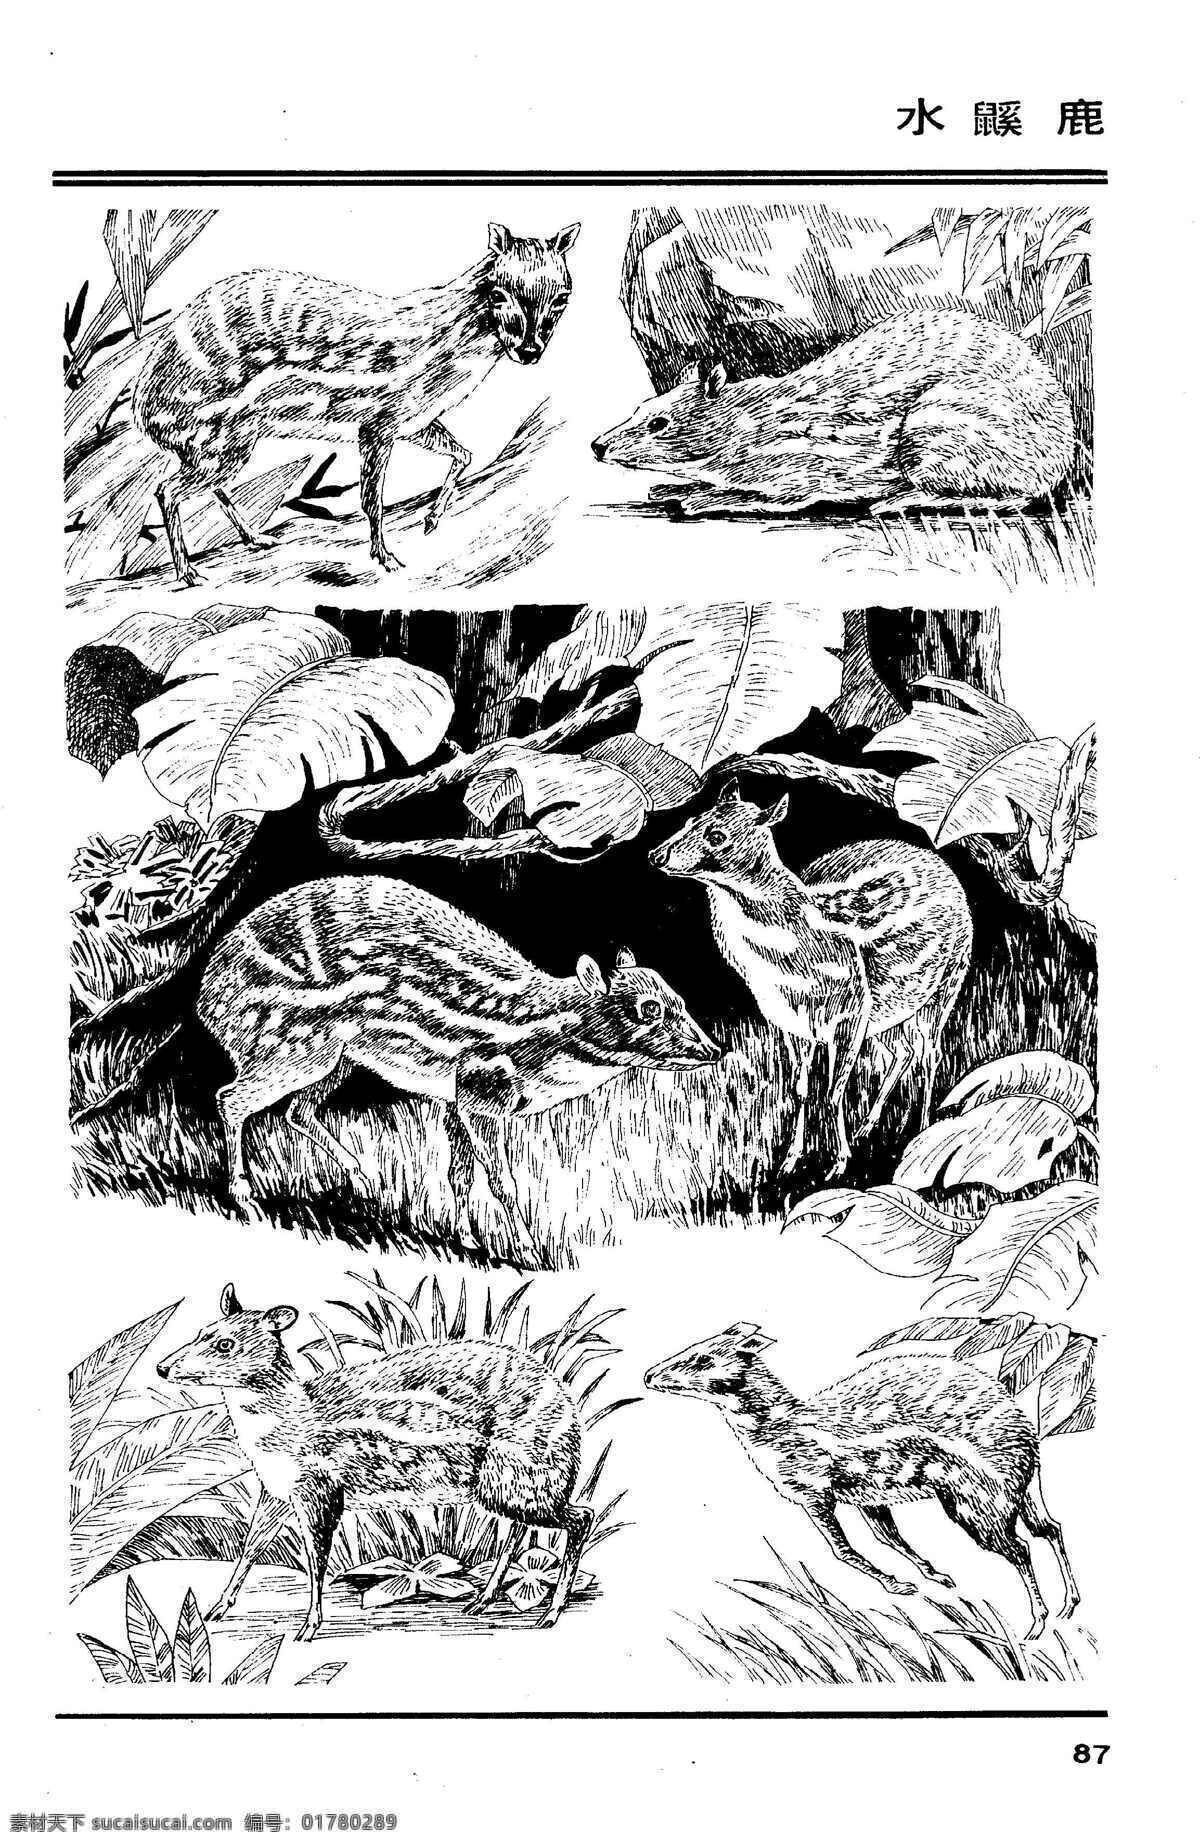 百兽谱 水鼷鹿 百兽 兽 家禽 猛兽 动物 白描 线描 绘画 美术 禽兽 野生动物 百兽图 鹿 生物世界 设计图库